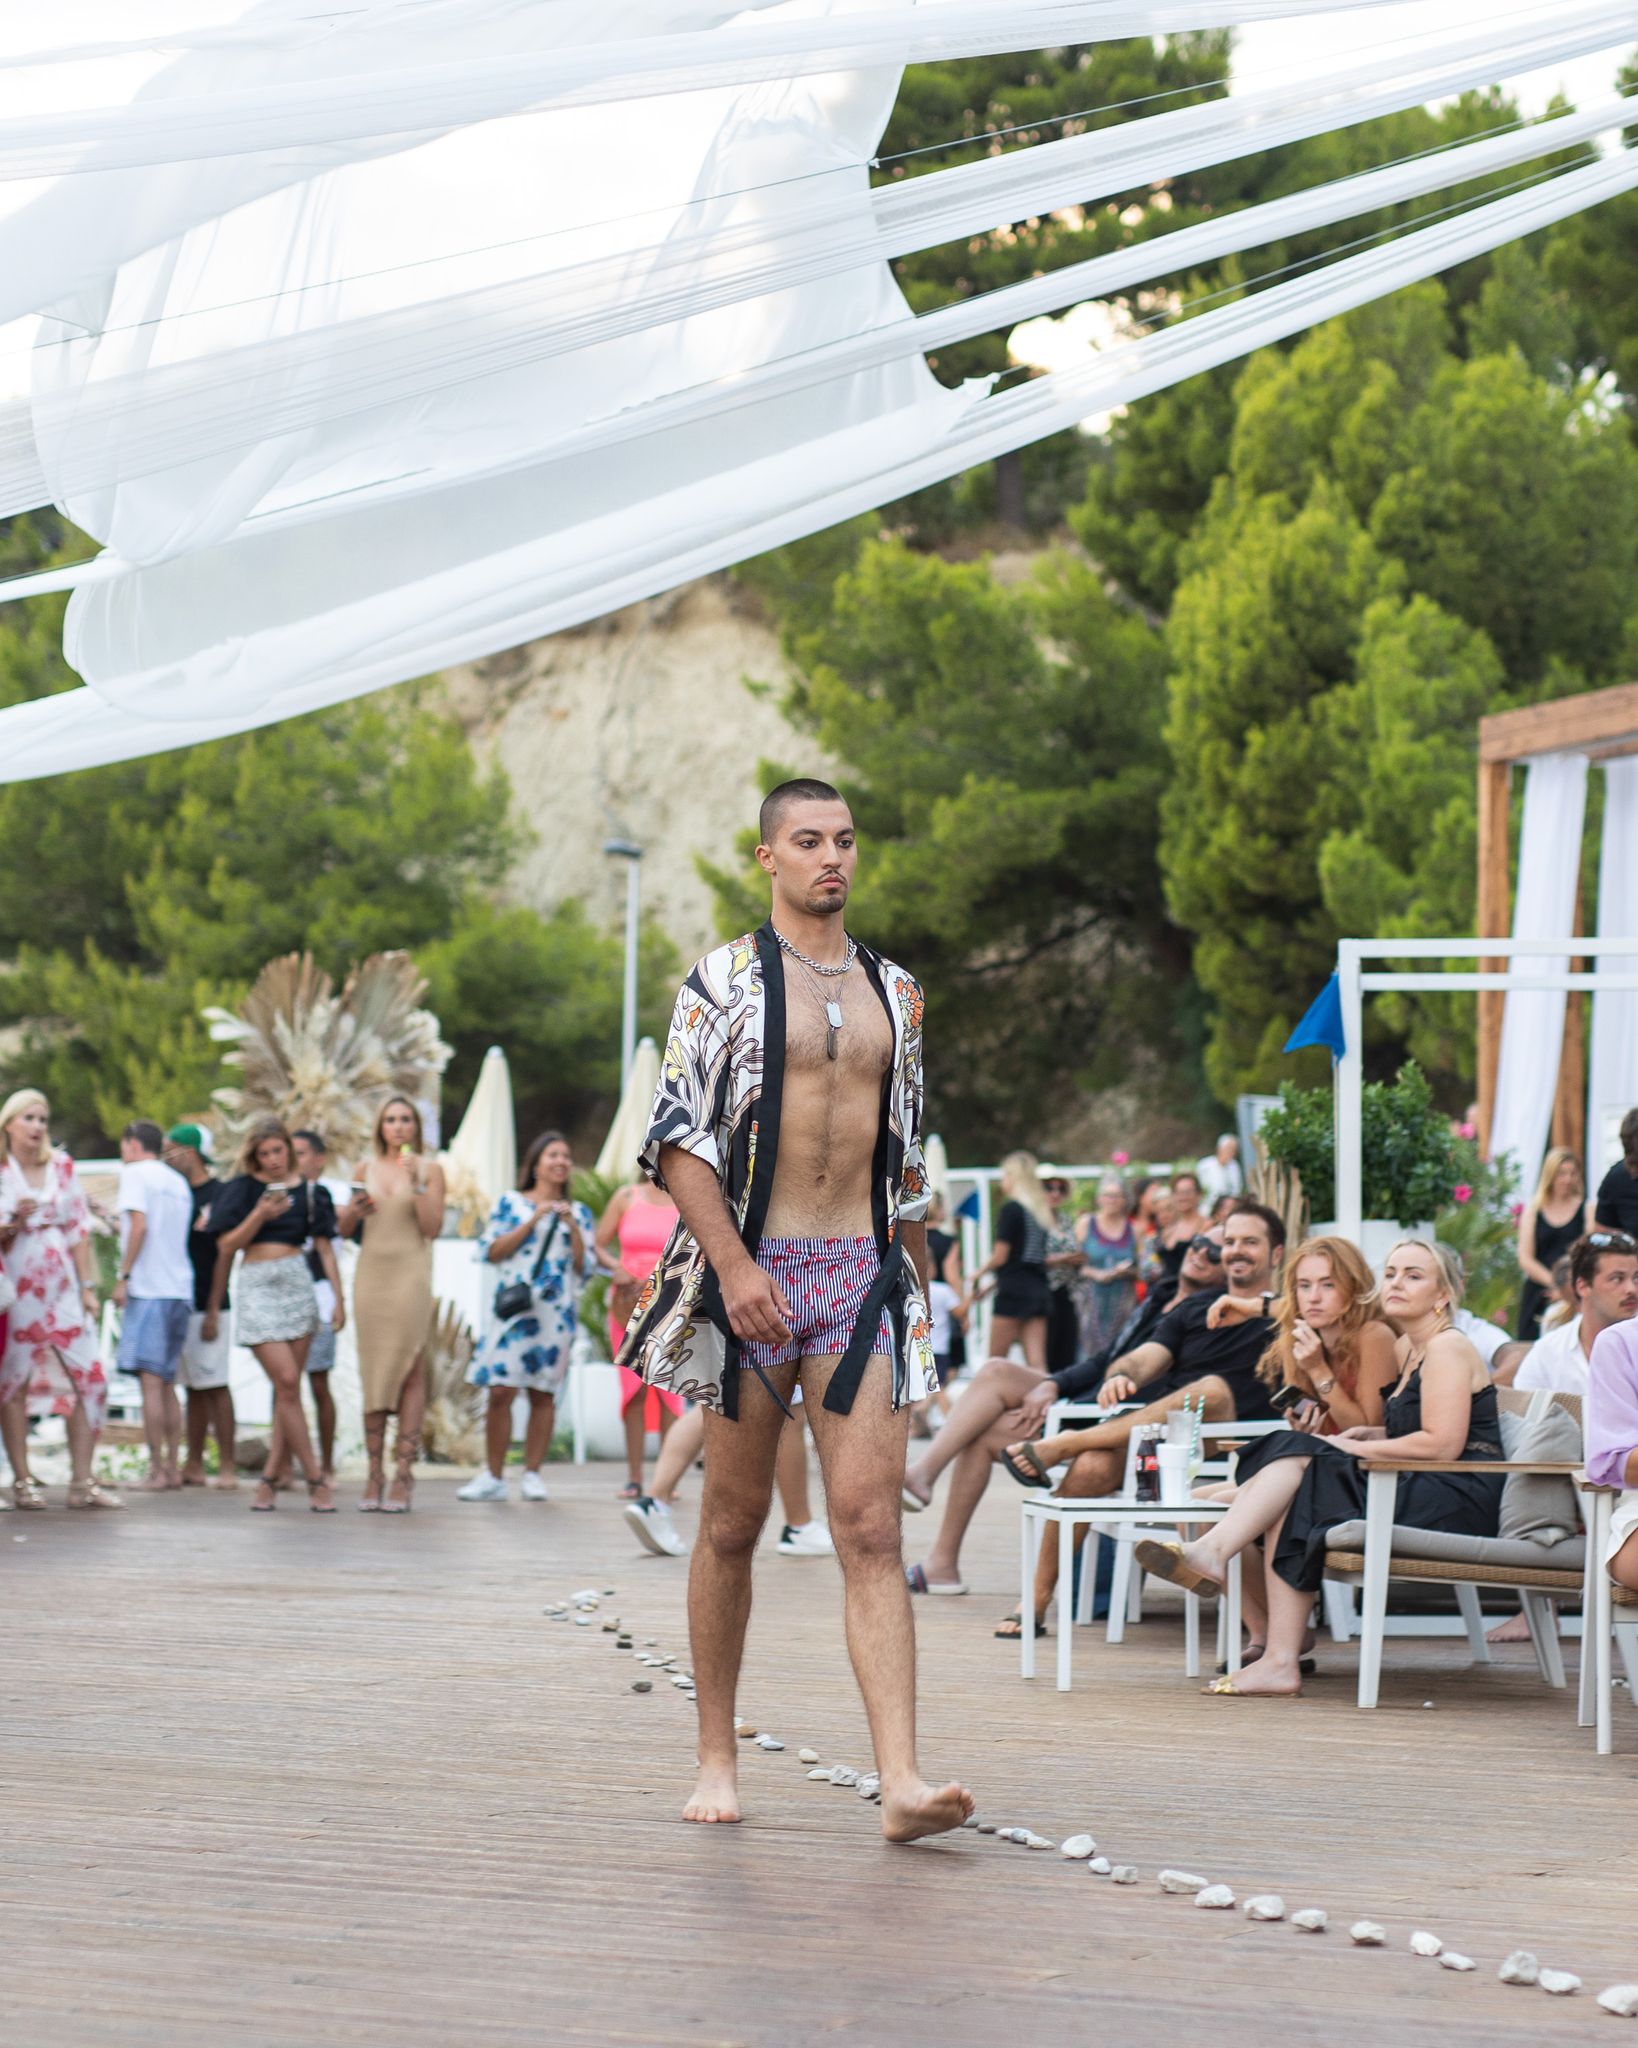 Predstavljena je nova kolekcija kupaćih kostima i haljina splitskih modnih brendova Anovi i No7 by Šime Kovačević